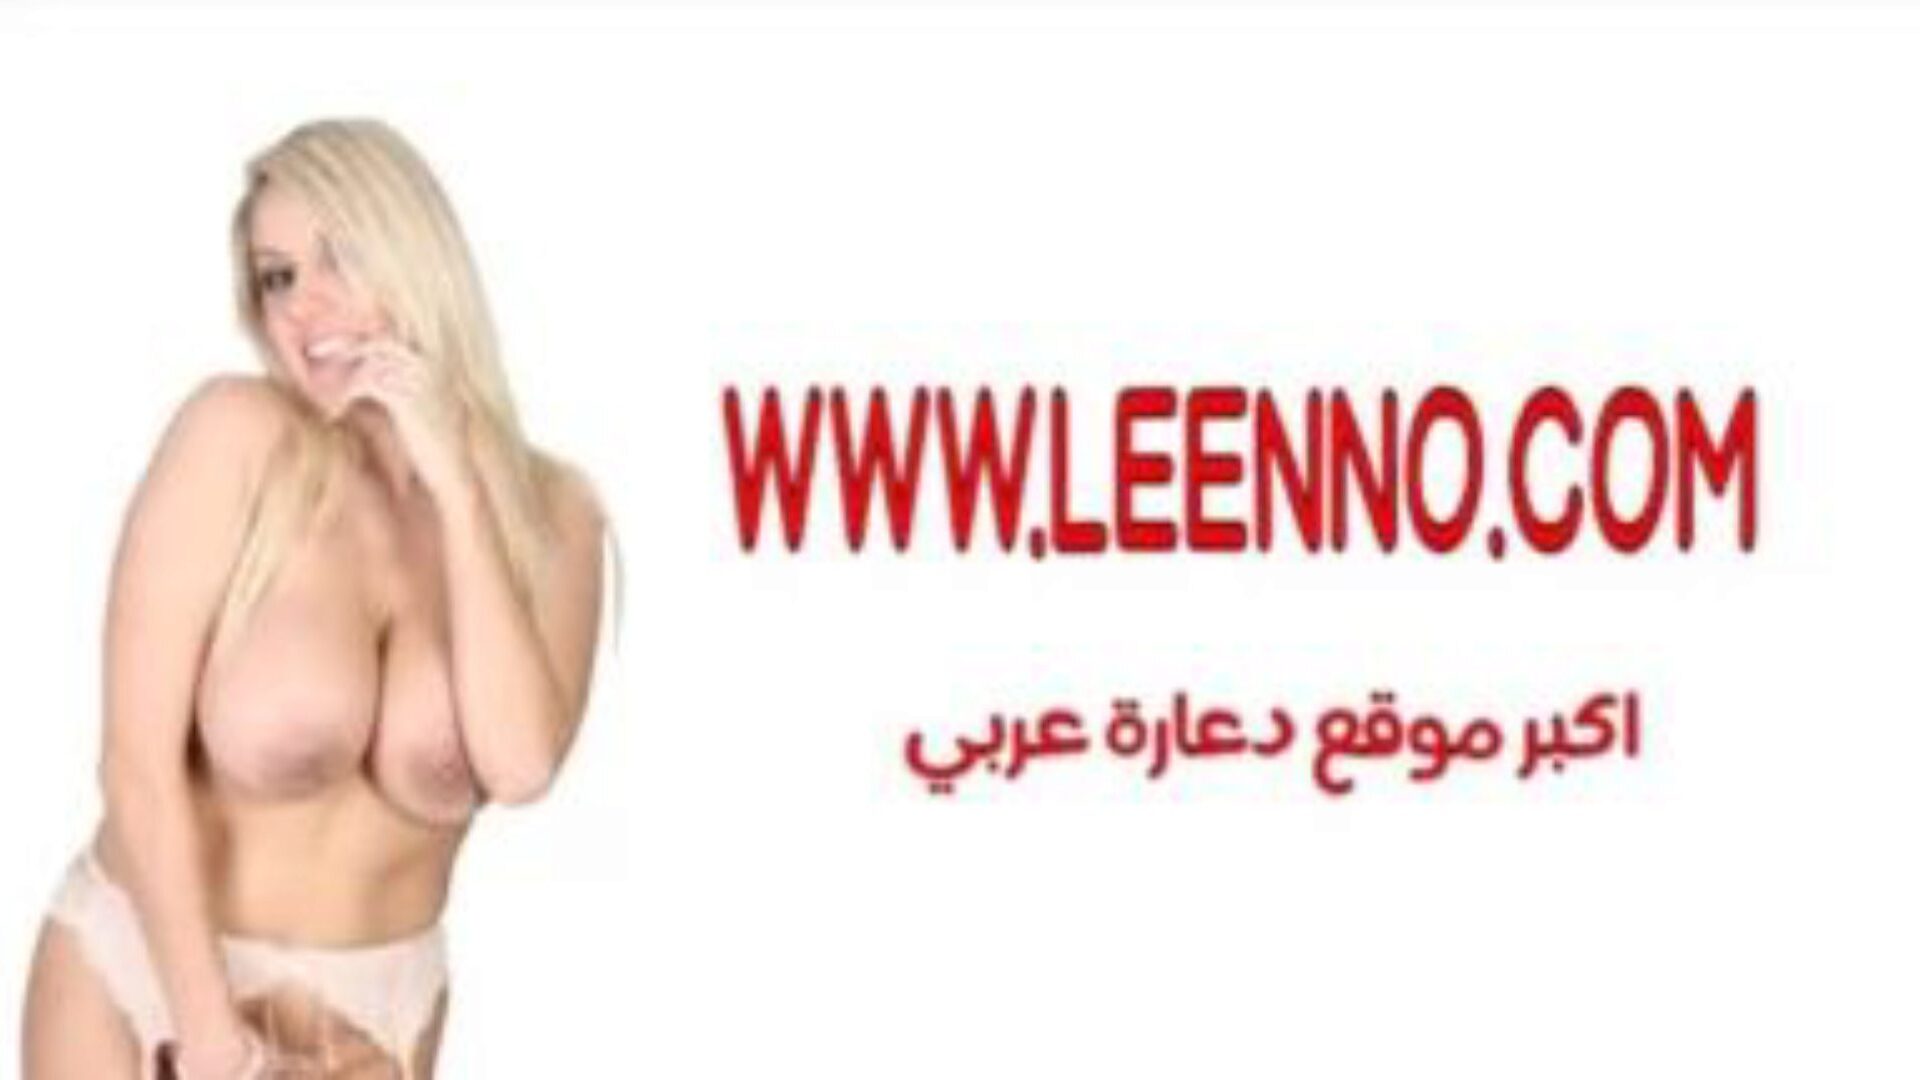 египатска шармота 1: арапска шармота порно видео е1 - кхамстер гледај египатску шармоту 1 цев зајебавај епизоду бесплатно за све на кхамстеру, са запањујућом колекцијом арапских арапских шармота, ккк 1 & 1 ккк порнографских свирки